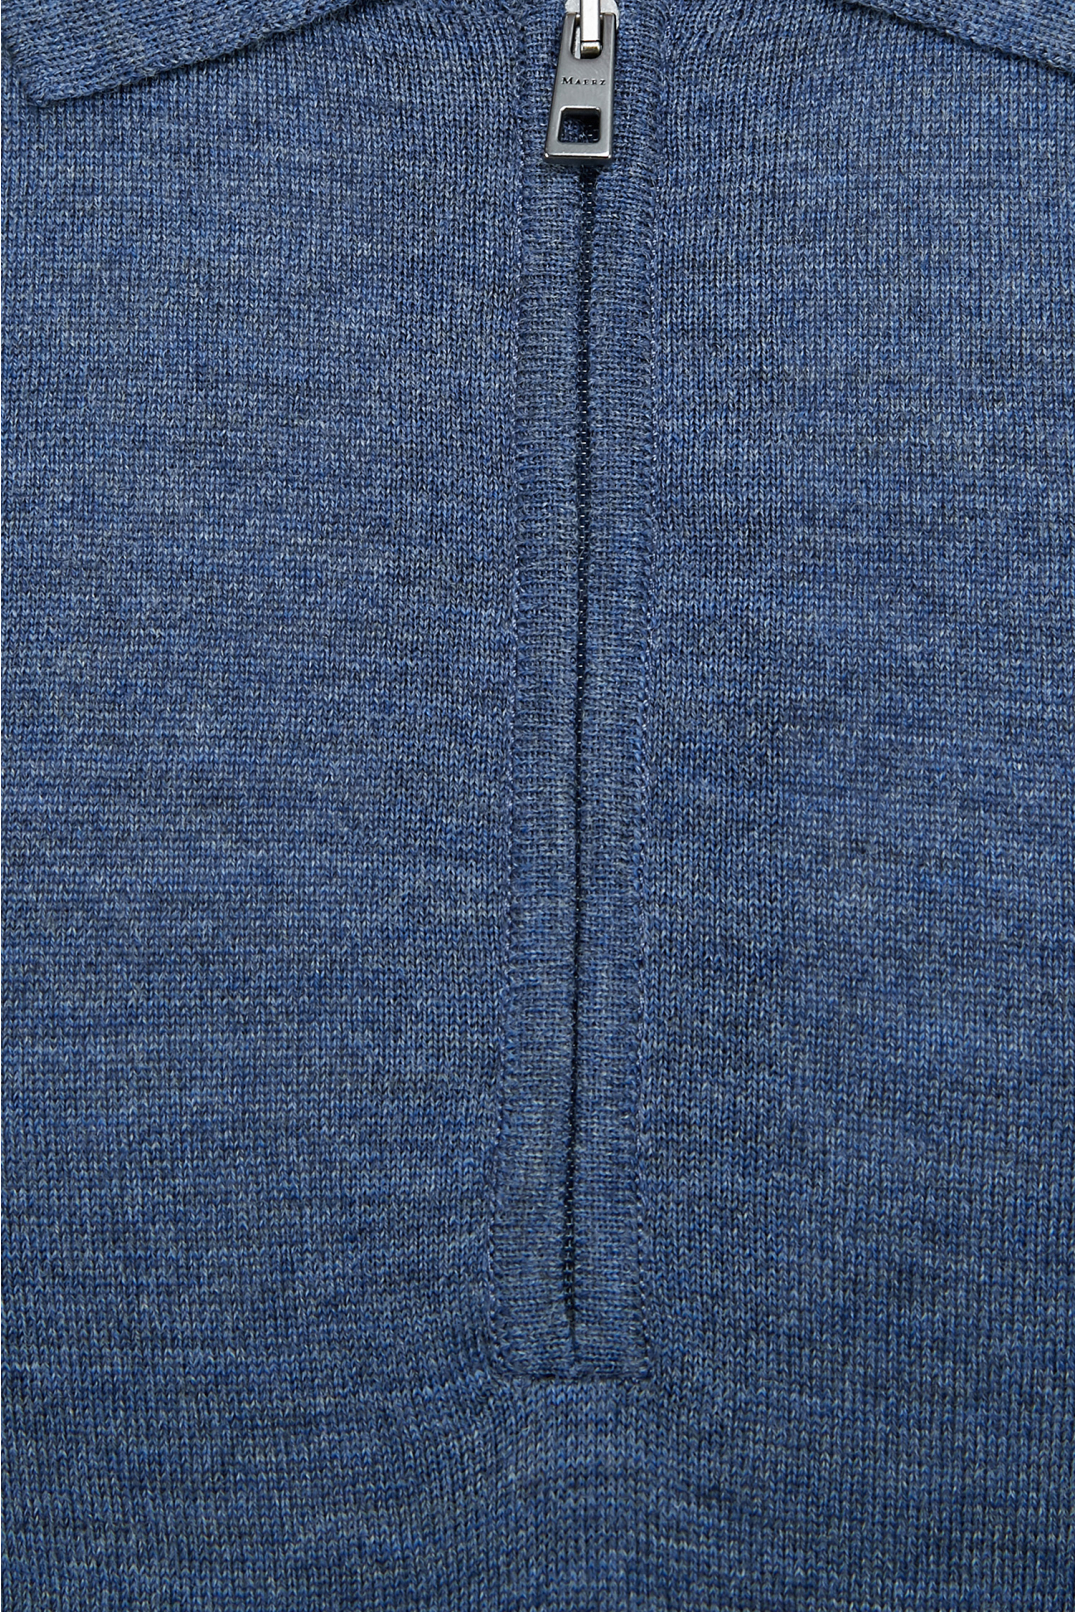 Чоловічий синій вовняний джемпер з коротким рукавом - 3